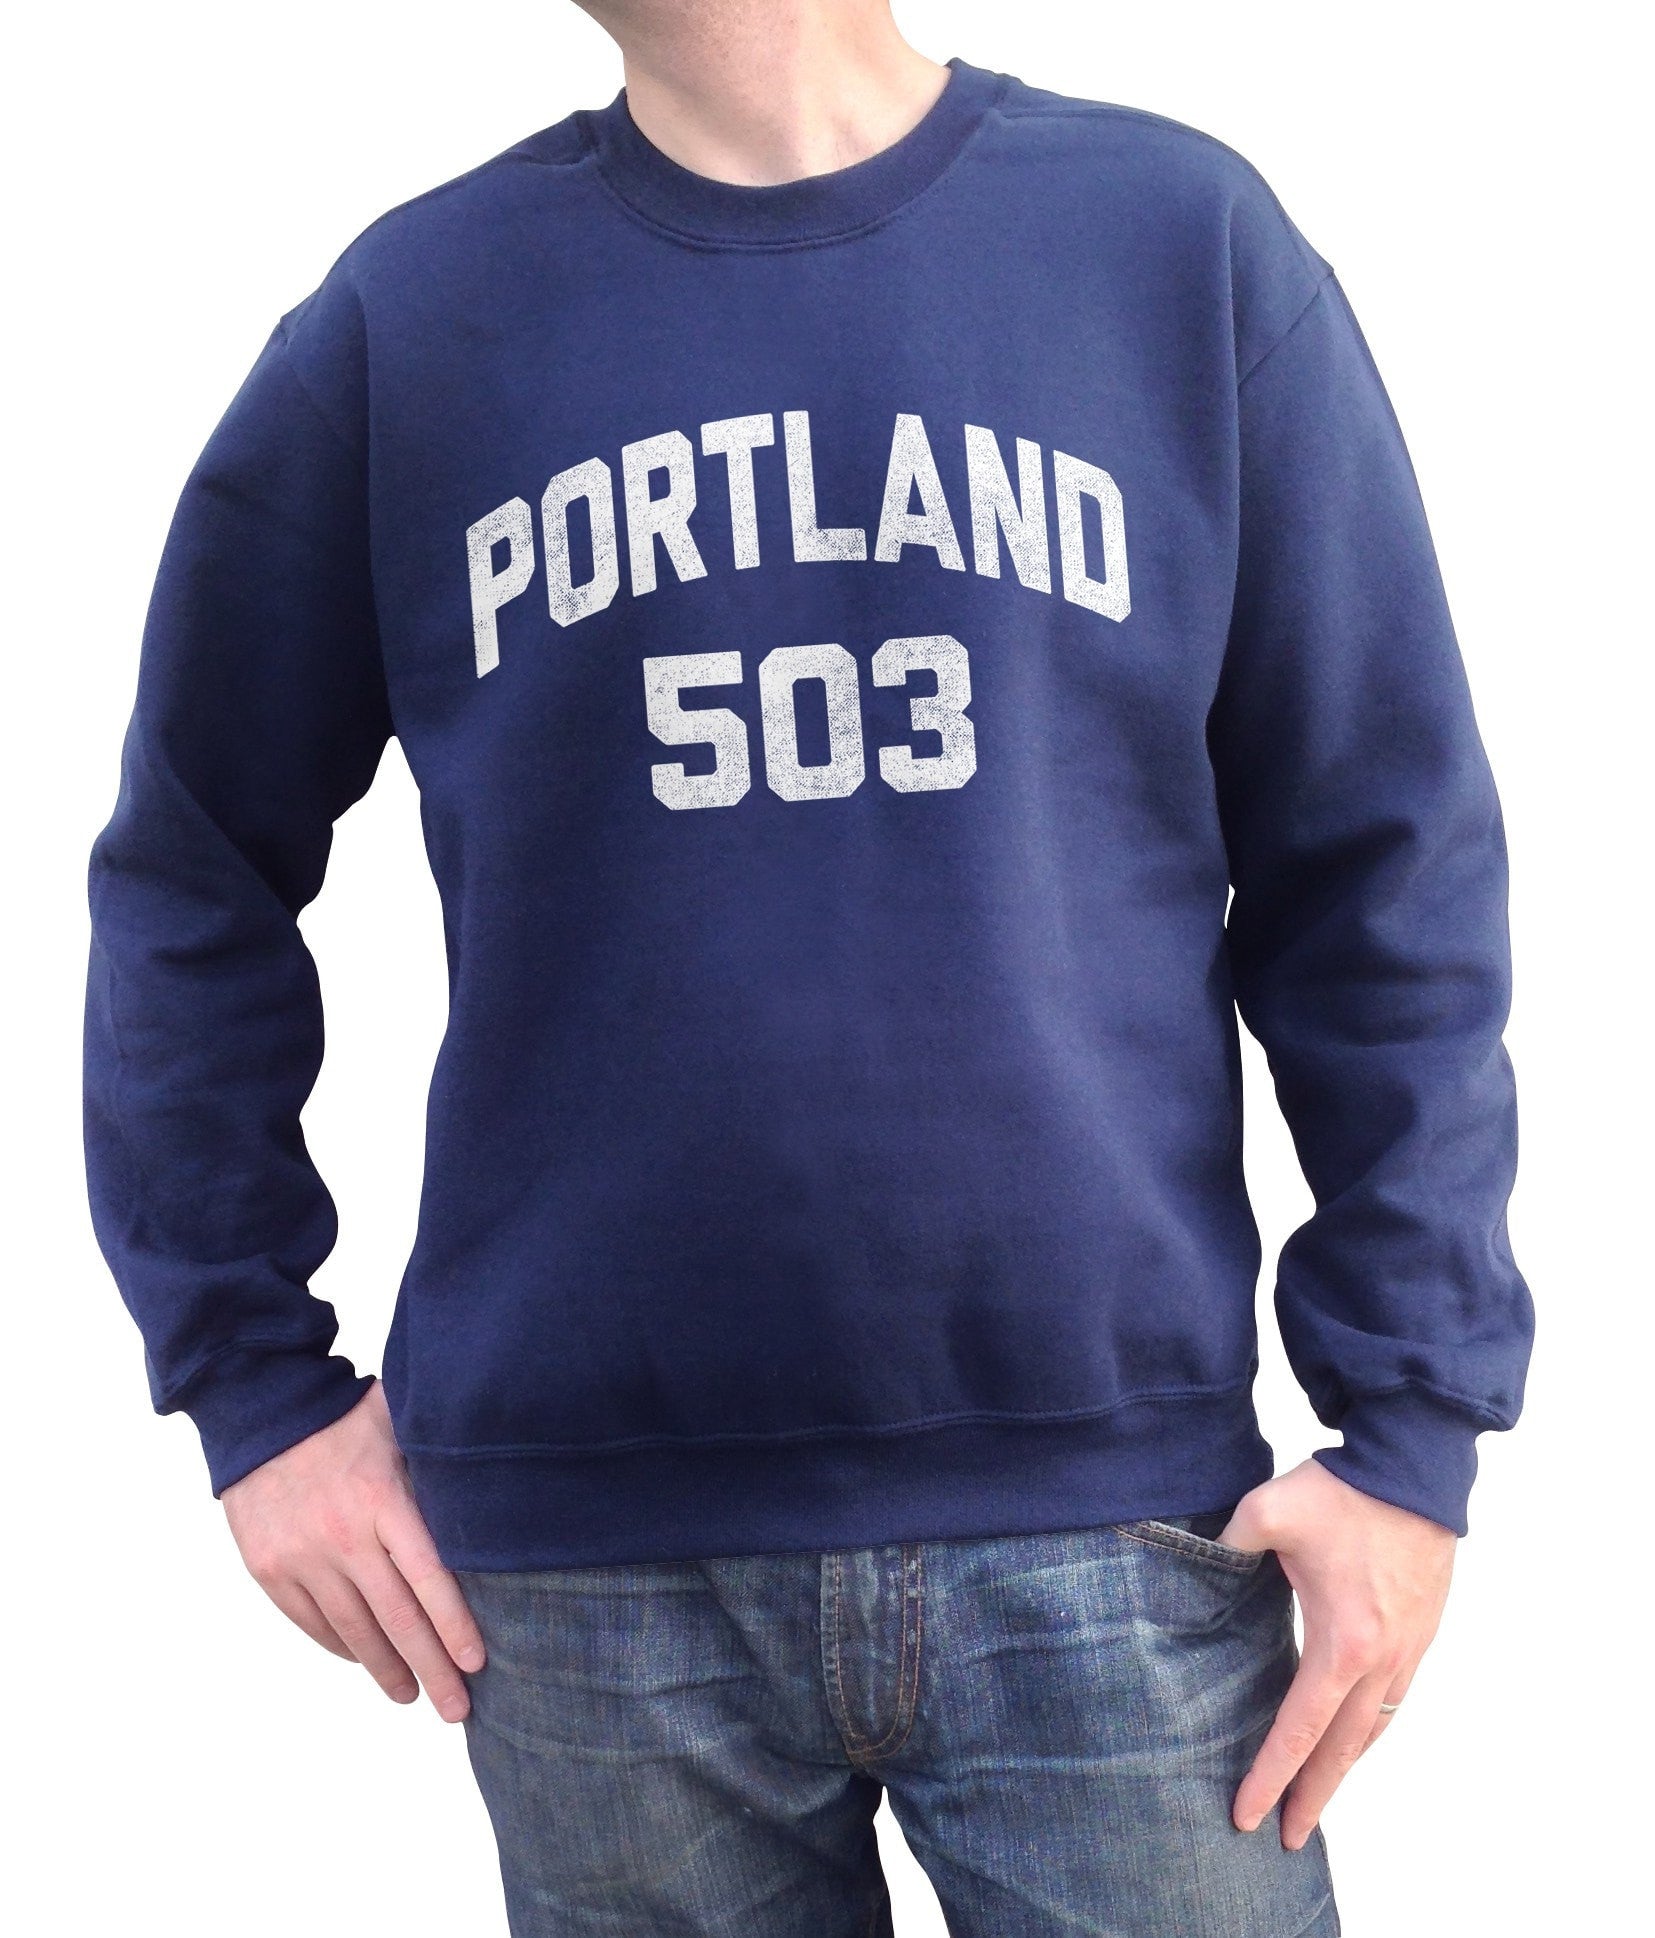 Unisex Portland 503 Area Code Sweatshirt